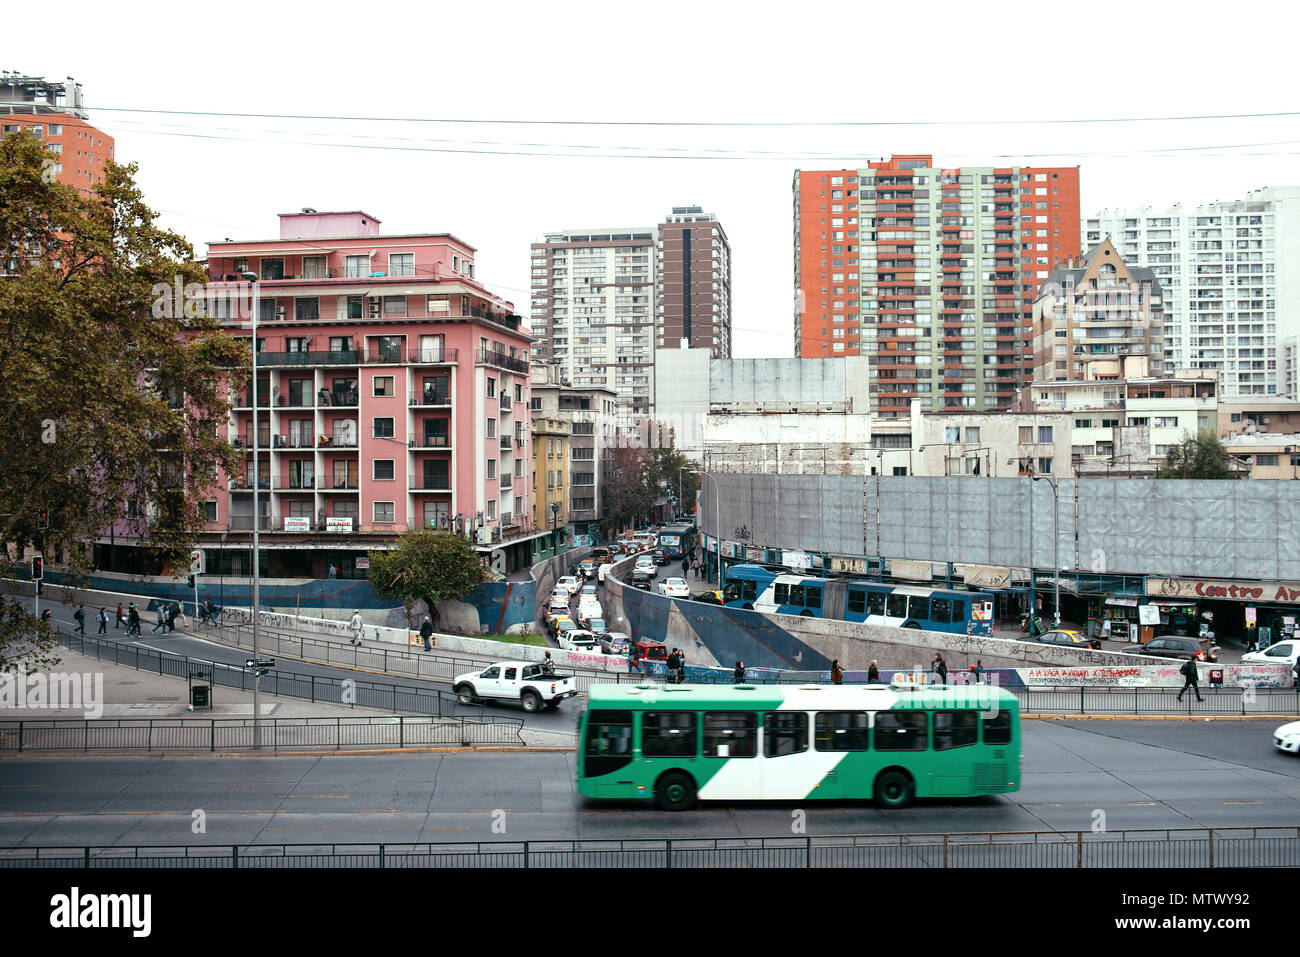 Enel tecnologia bus elettrico: Mezzi pubblici Metbus. Vista del centro di Santiago dalla collina di Santa Lucia, Santiago, Cile. Maggio 2018 Foto Stock